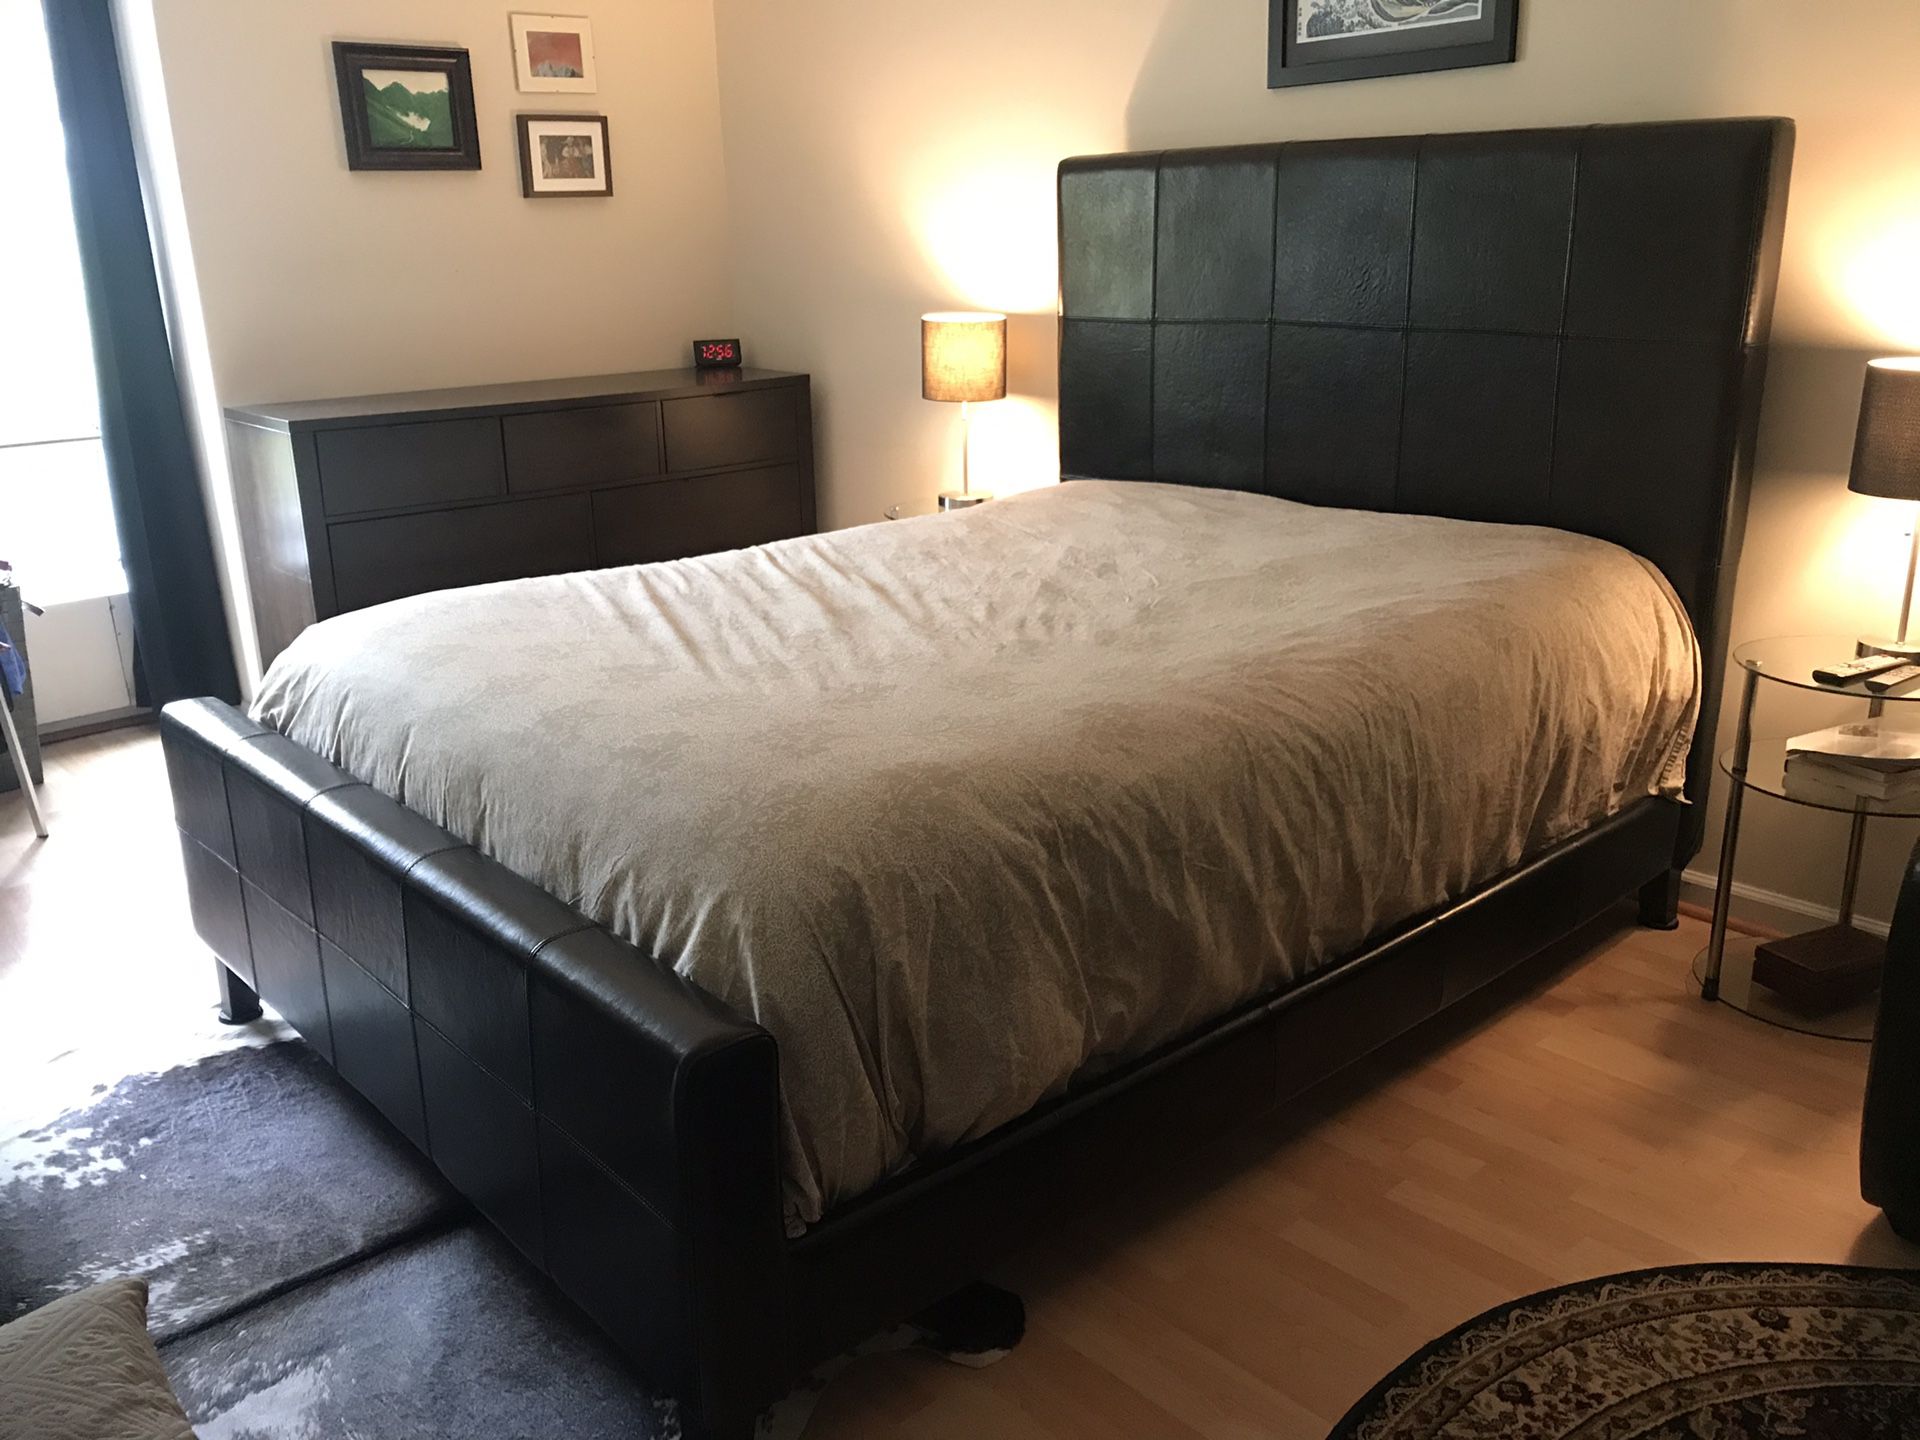 Bedroom set: Queen Bed Frame and Large Dresser